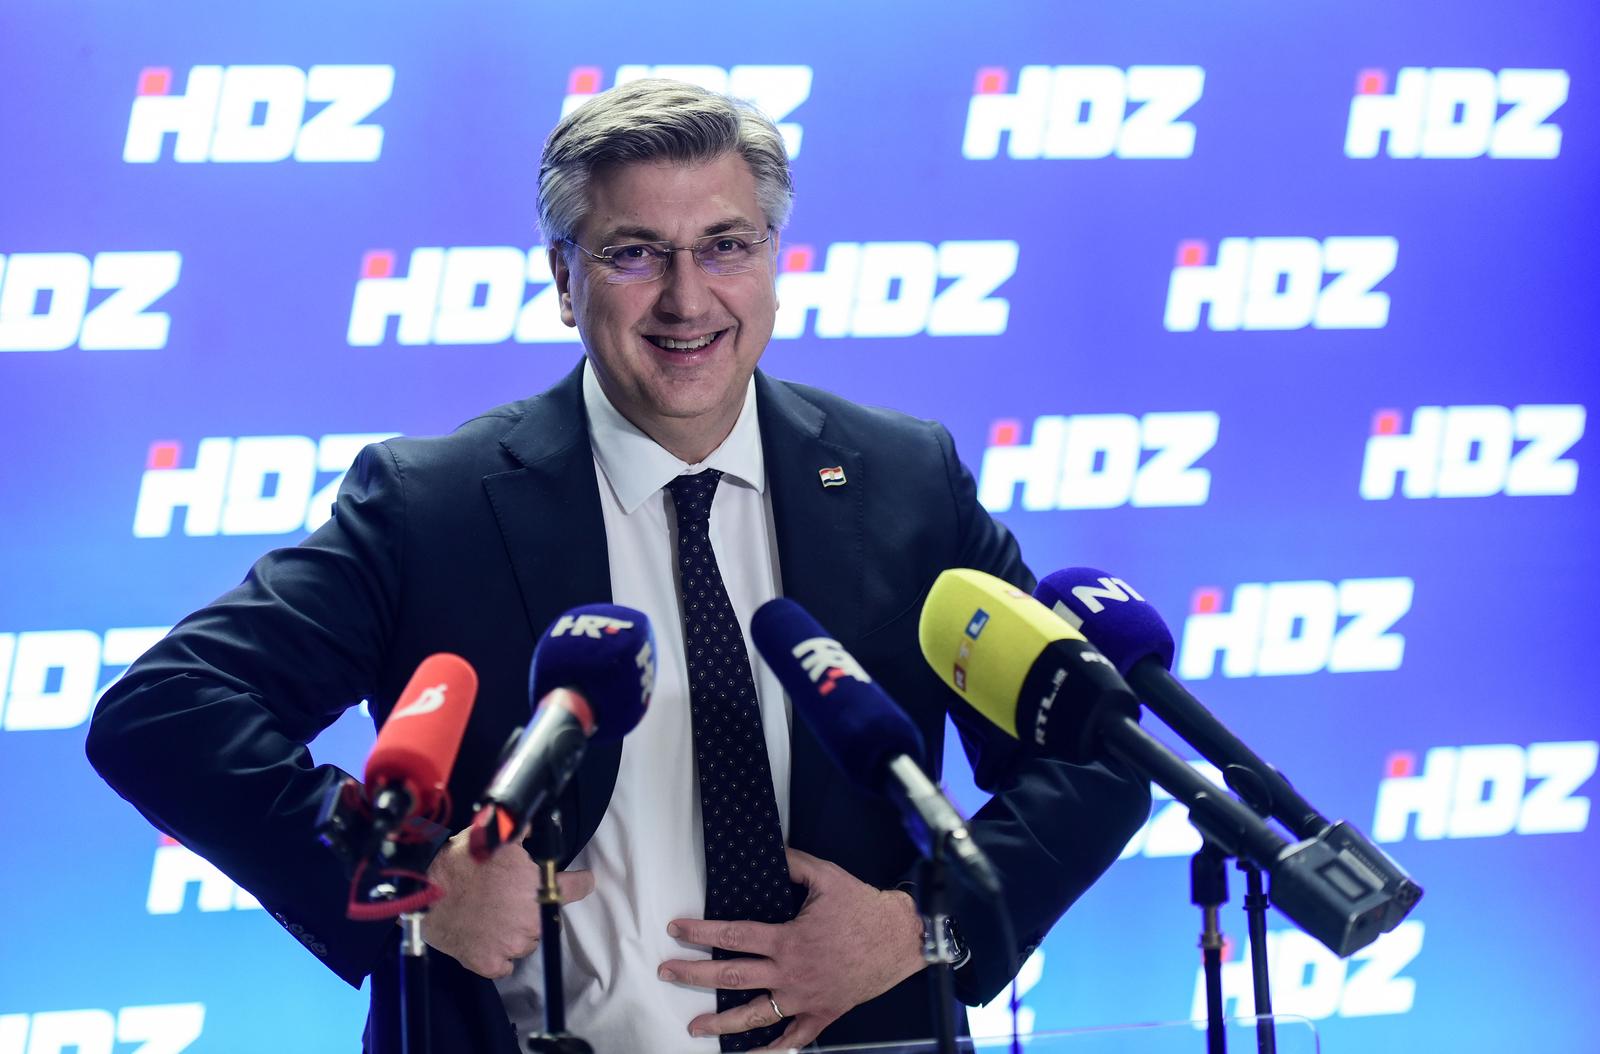 7.3.2023., Zagreb - Premijer Andrej Plenkovic dao je izjavu za medije nakon sjednice sireg Predsjednistva HDZ-a. Photo: Neva Zganec/PIXSELL